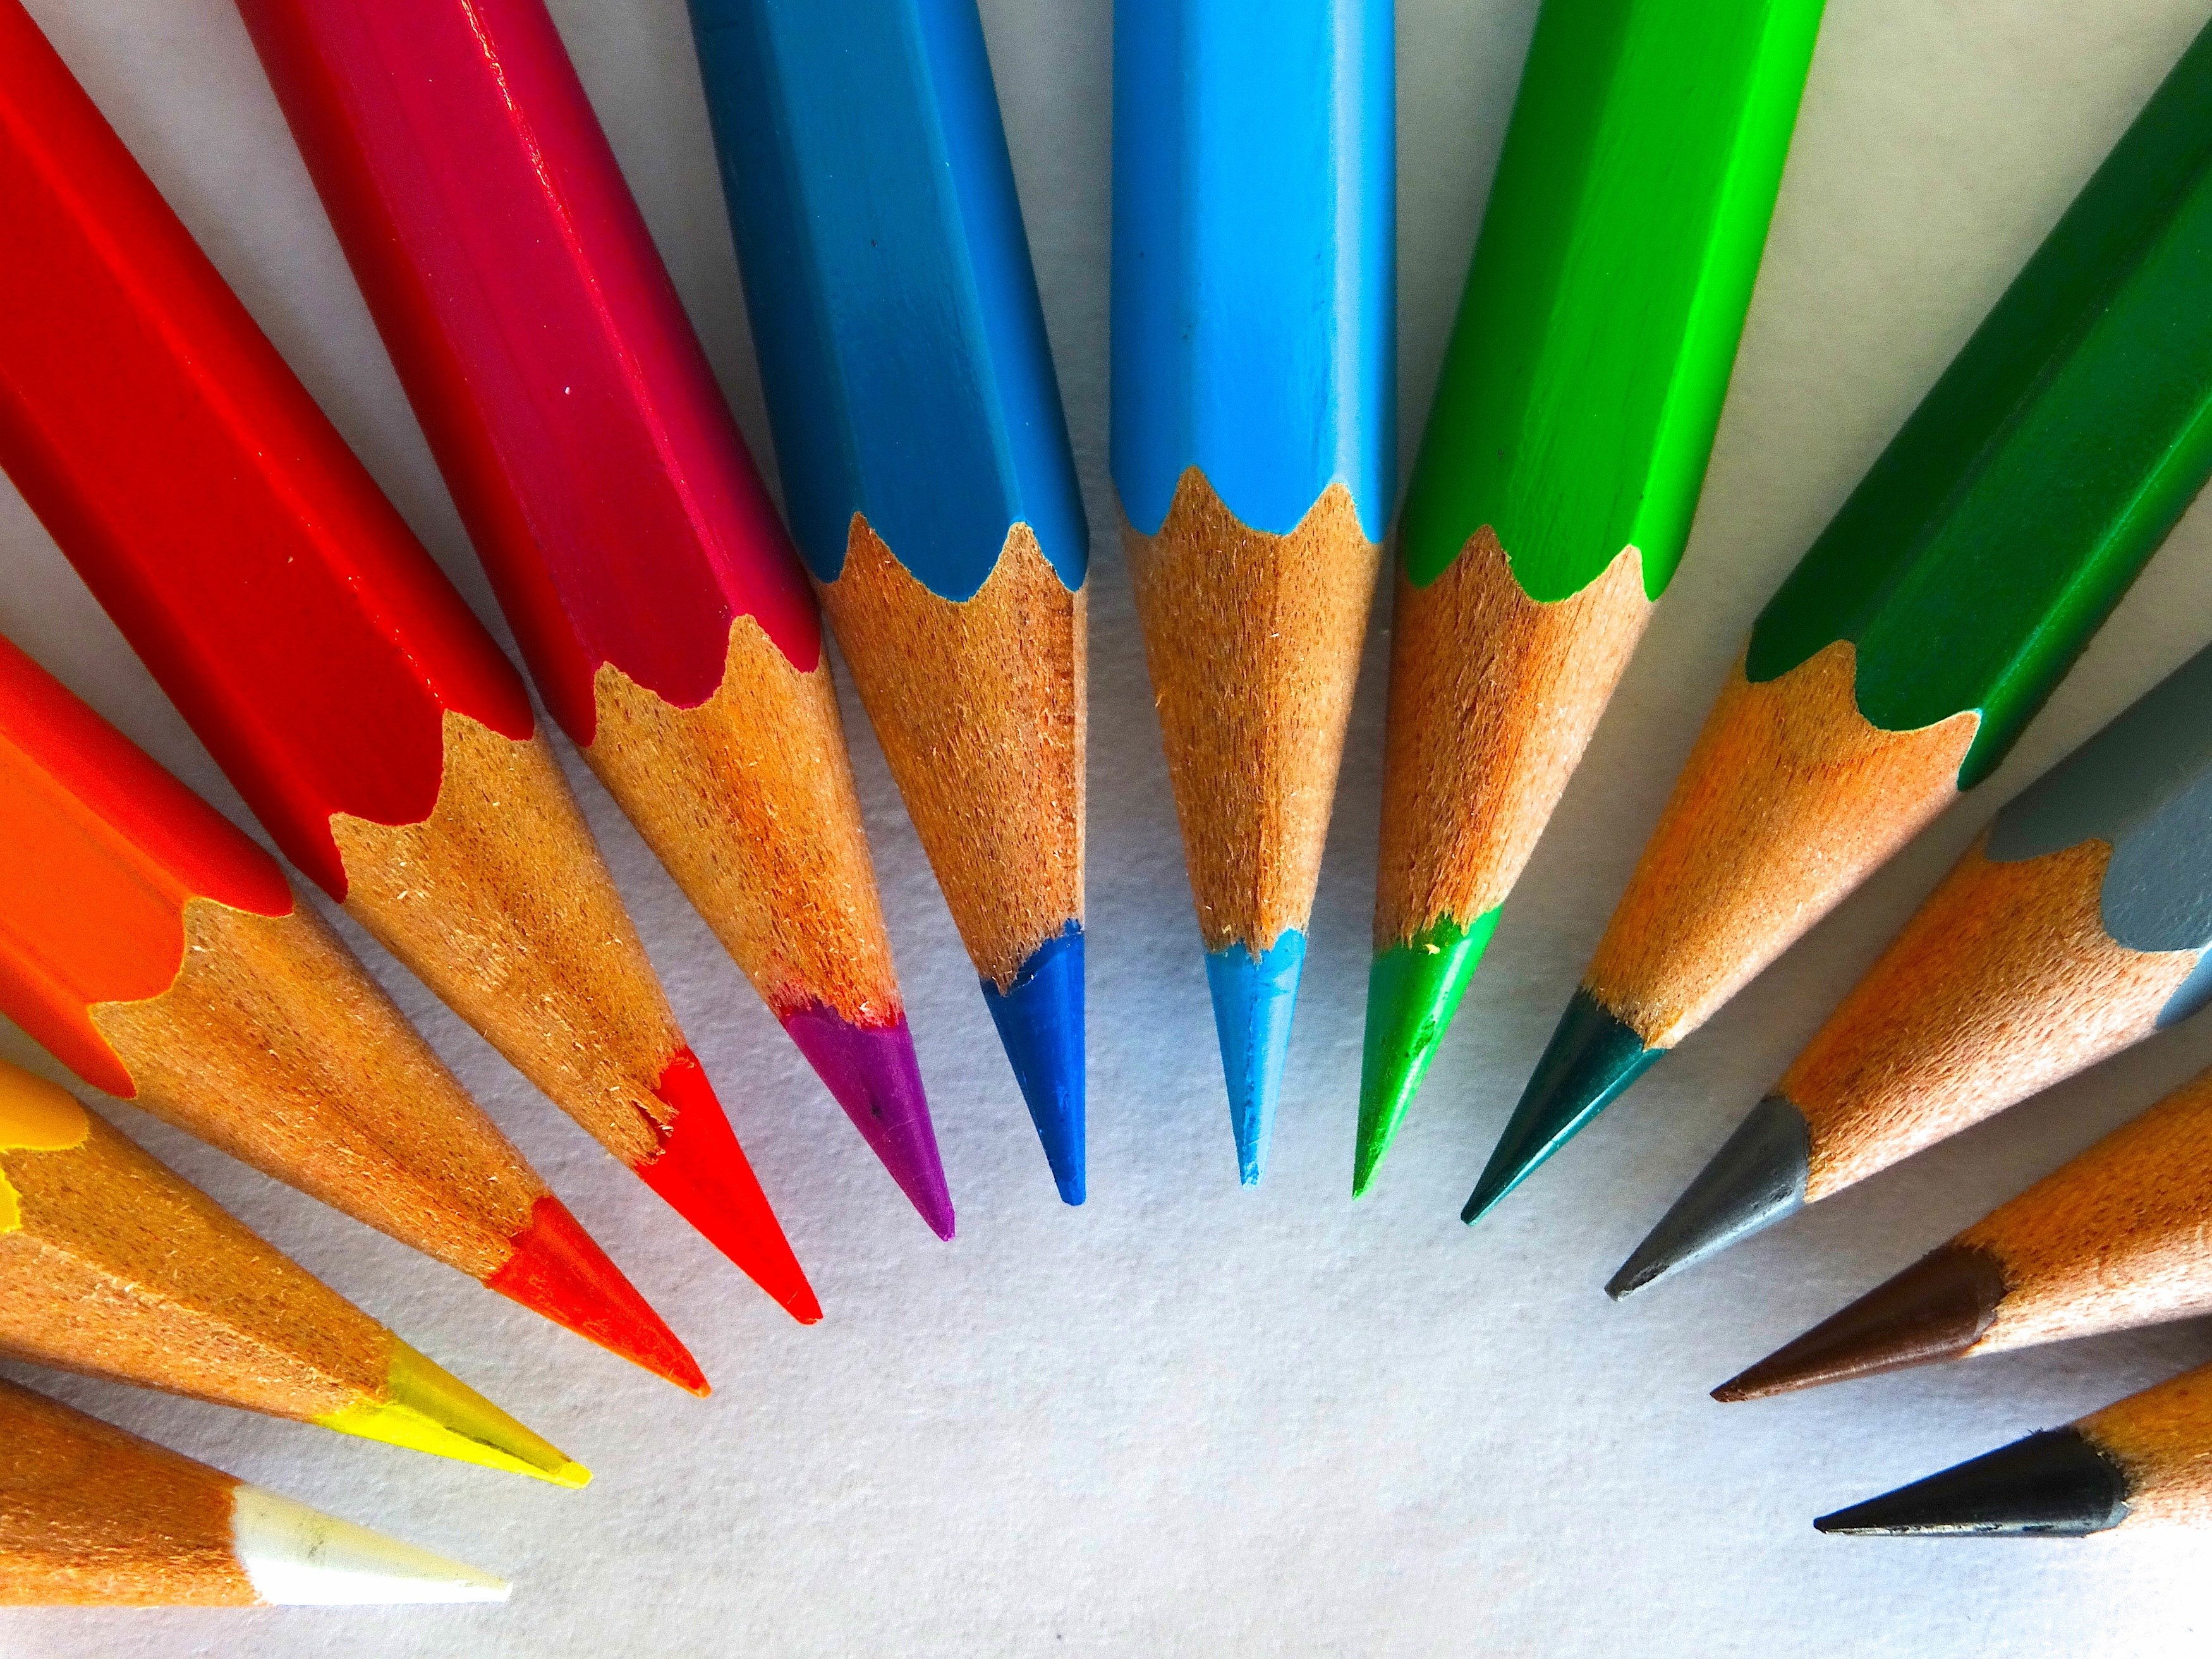 تصویر زیبا و فوق العاده قشنگ از مداد رنگی های خوش رنگ 